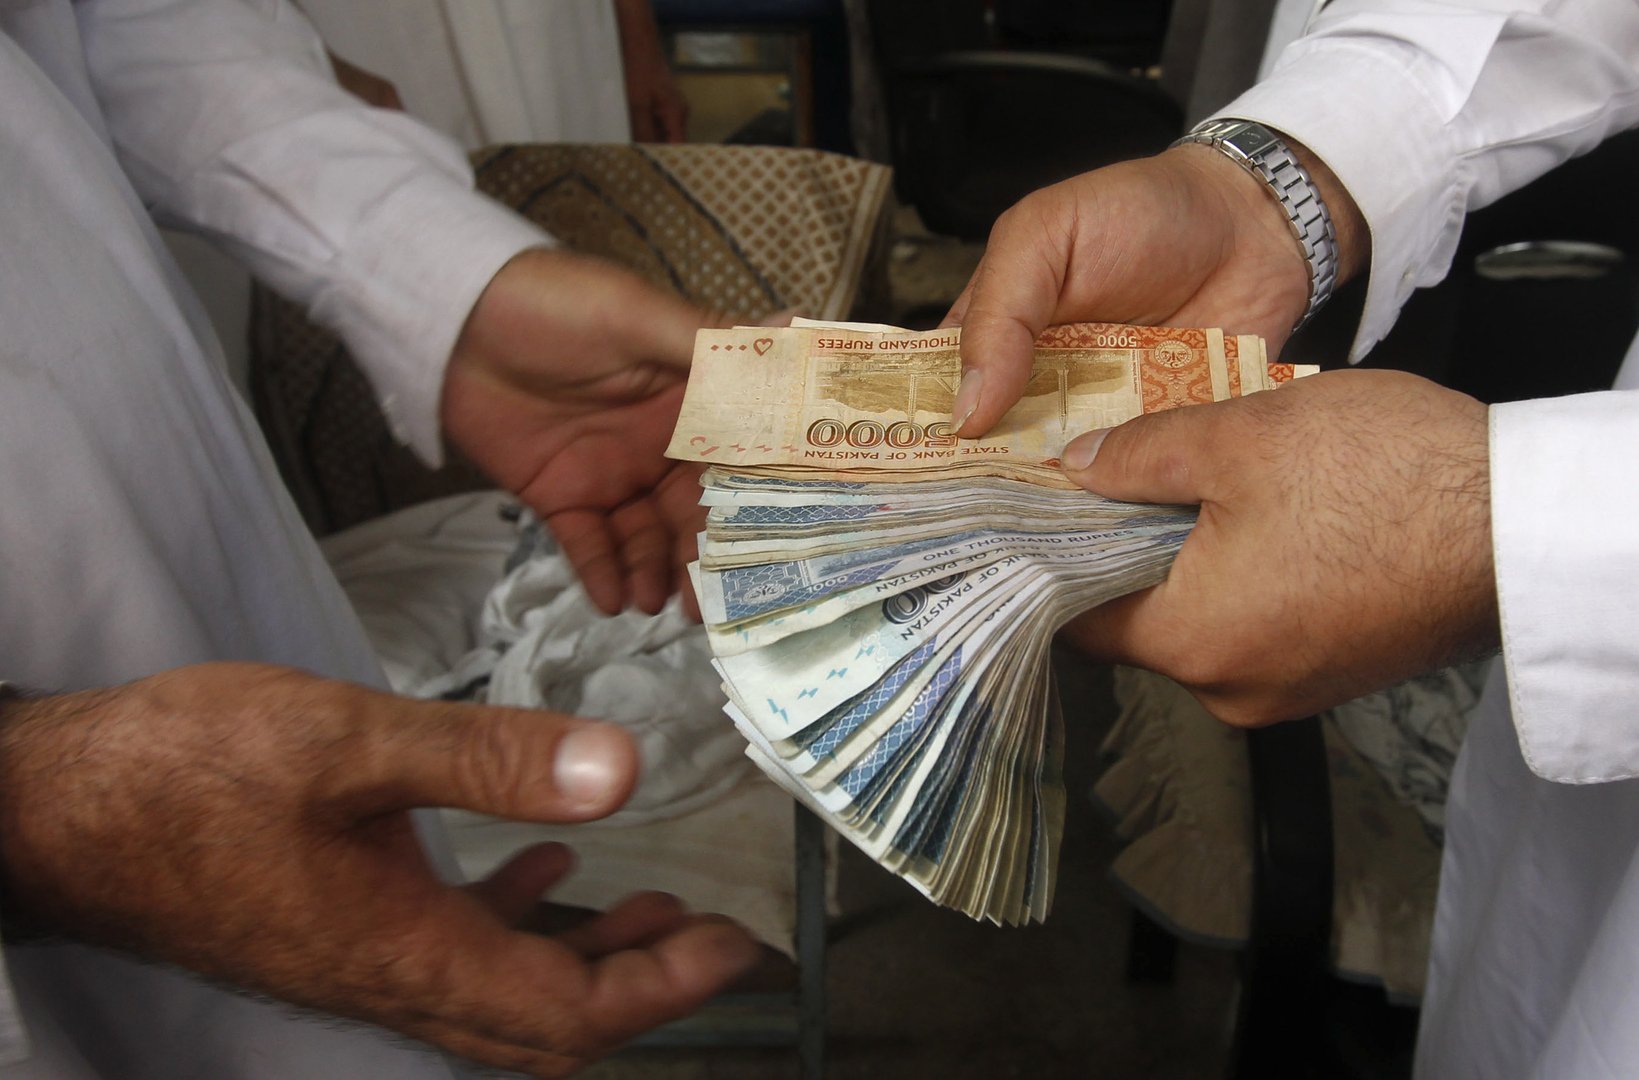 رئيس البنك المركزي الأفغاني يفر من كابل وانخفاض حاد بالعملة الأفغانية